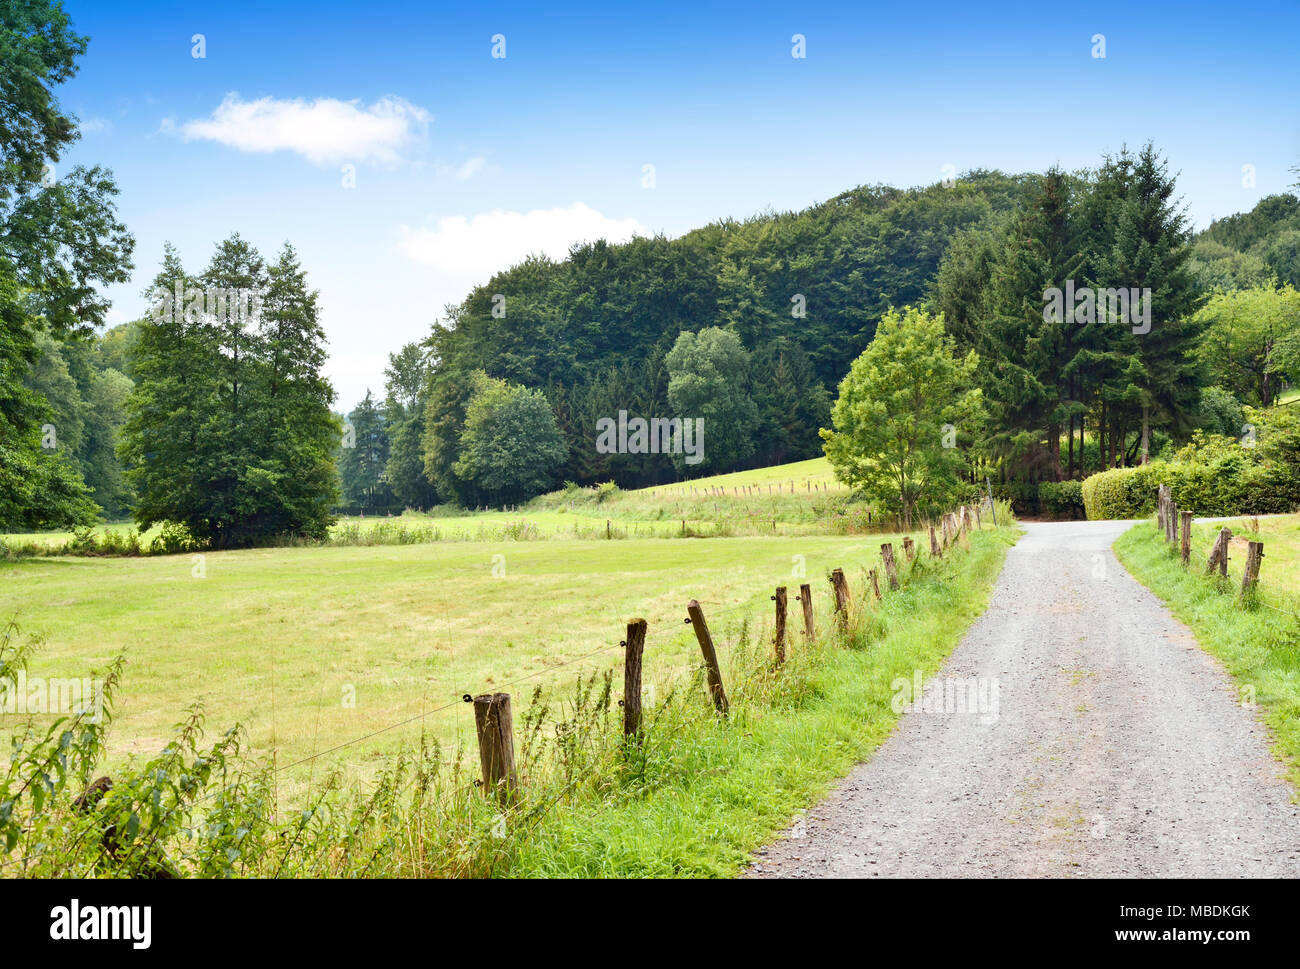 Route de campagne ou chemin idyllique à travers champs et forêt. Campagne avec soleil et ciel bleu. Banque D'Images